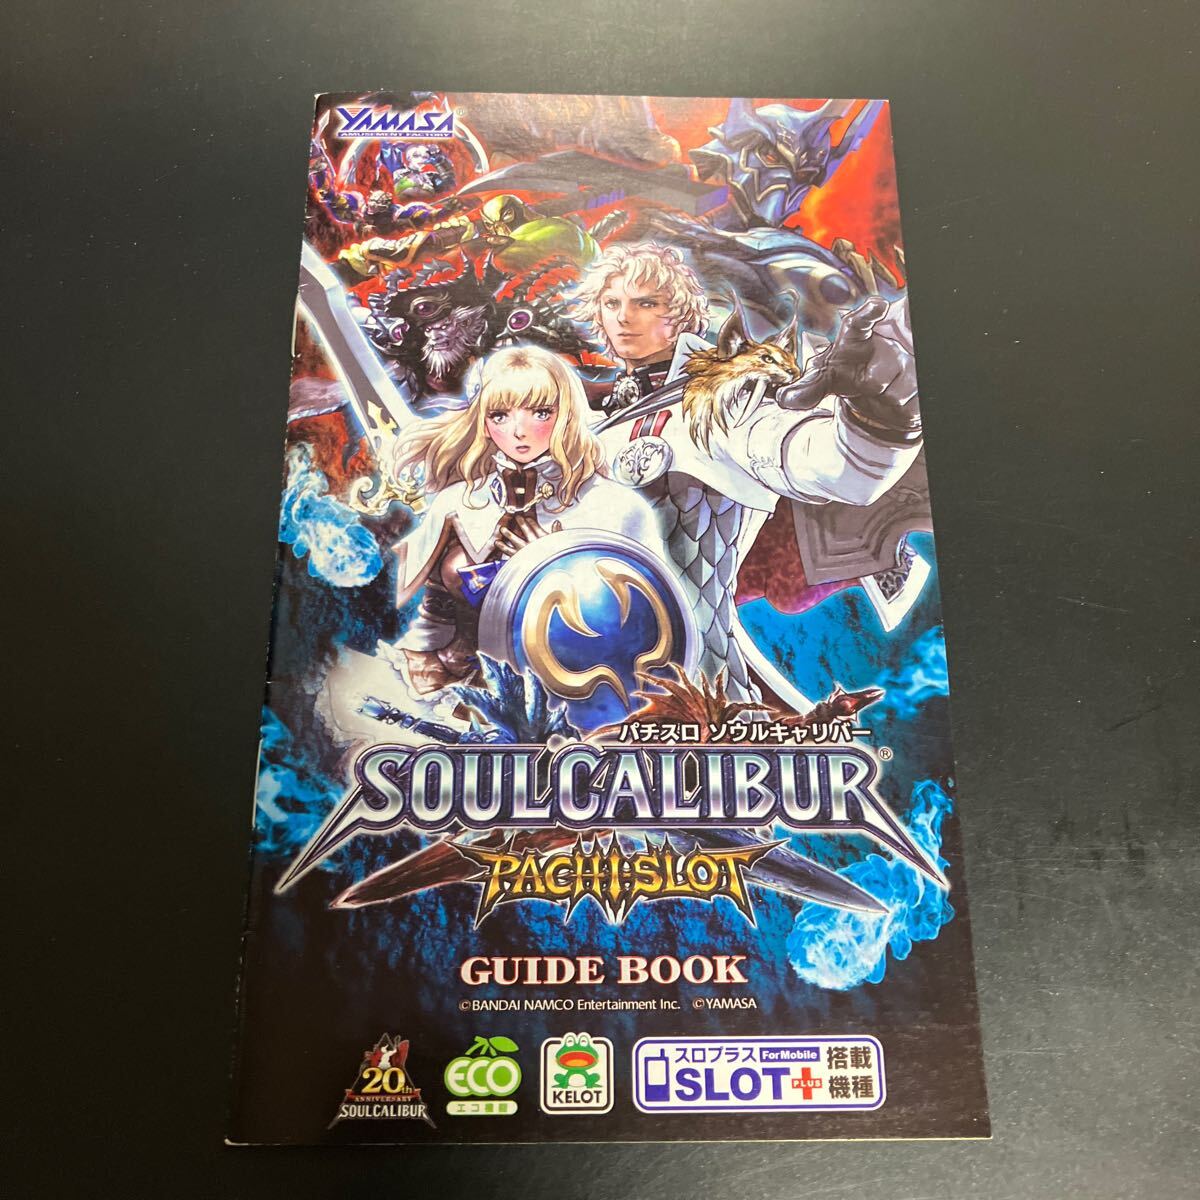  soul kyali bar Soul CALIBUR slot machine 5 serial number rare small booklet official guidebook * prompt decision 